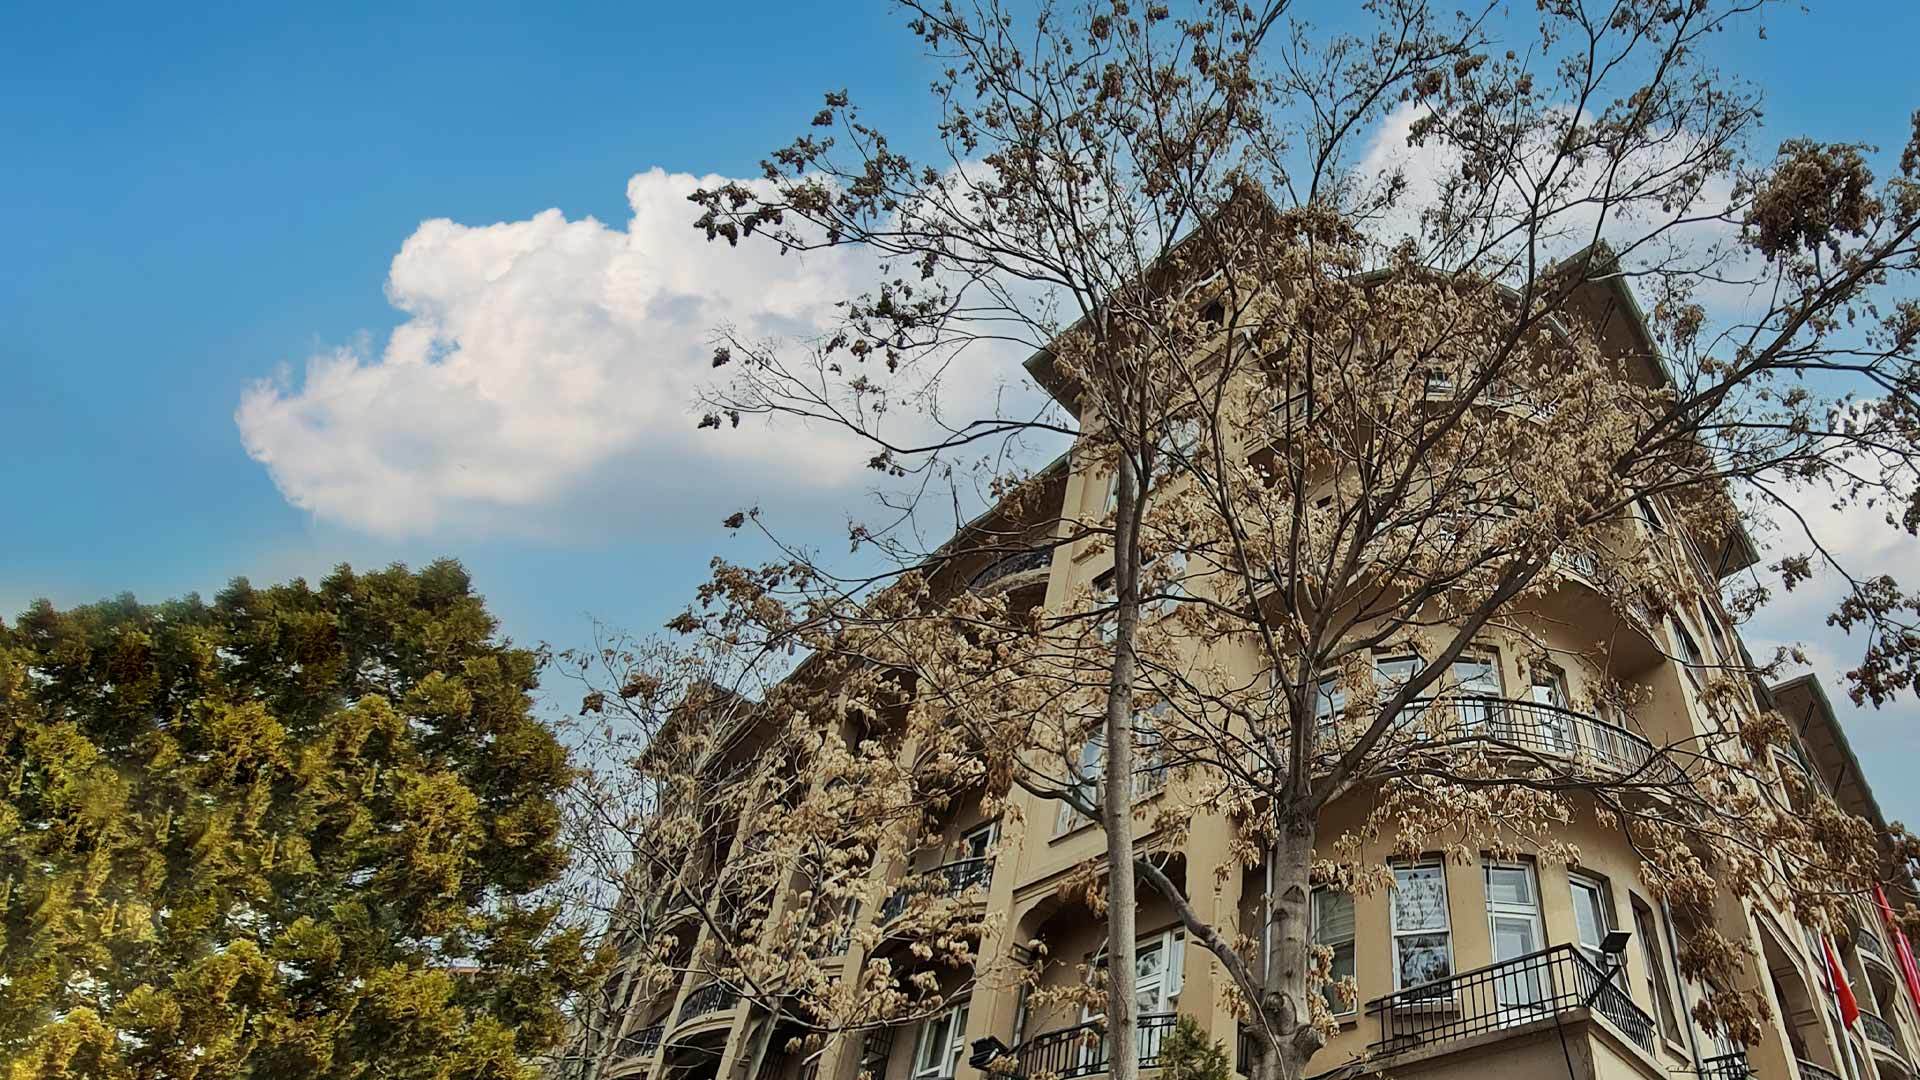 Ankara Apartmanları